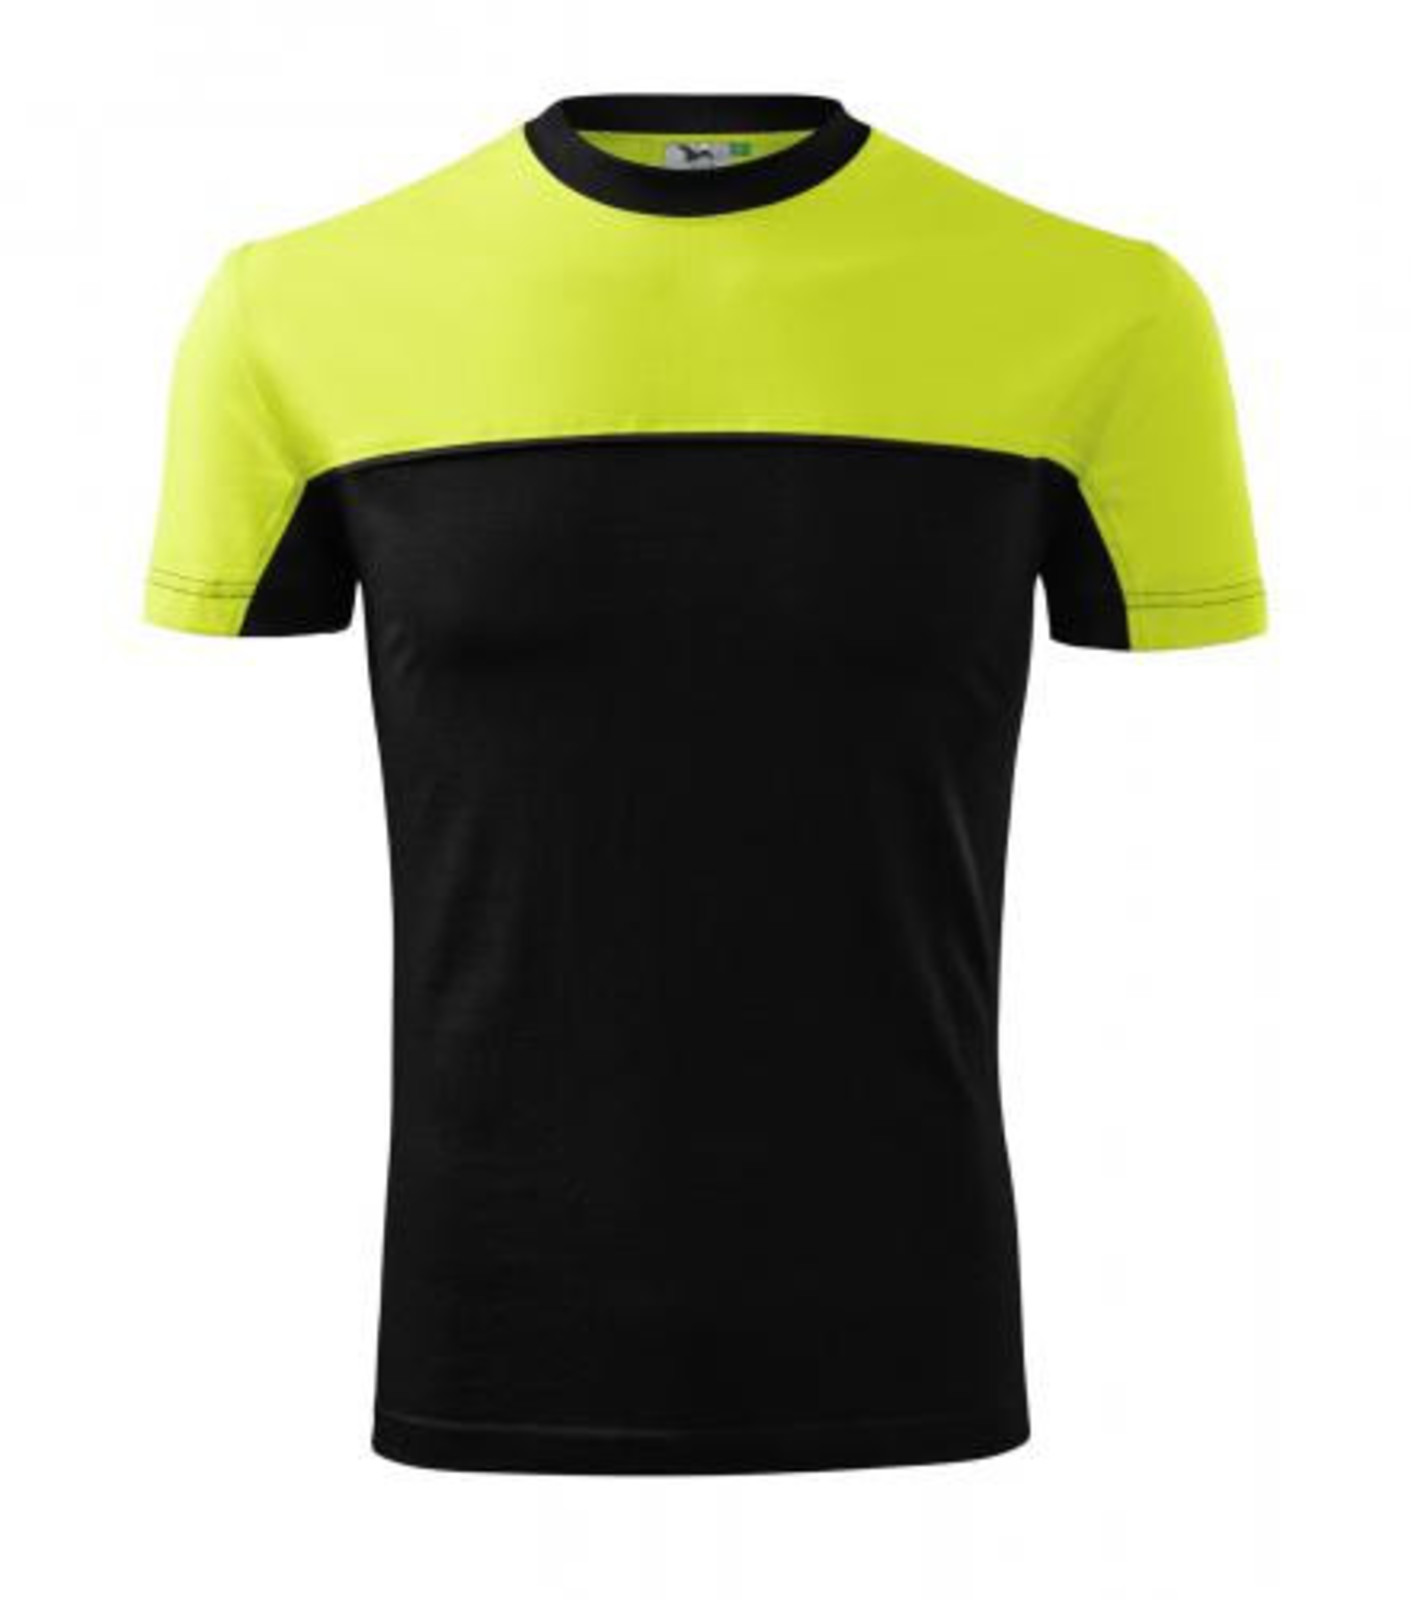 Unisex tričko Rimeck Colormix 109 - veľkosť: 3XL, farba: limetková/čierna